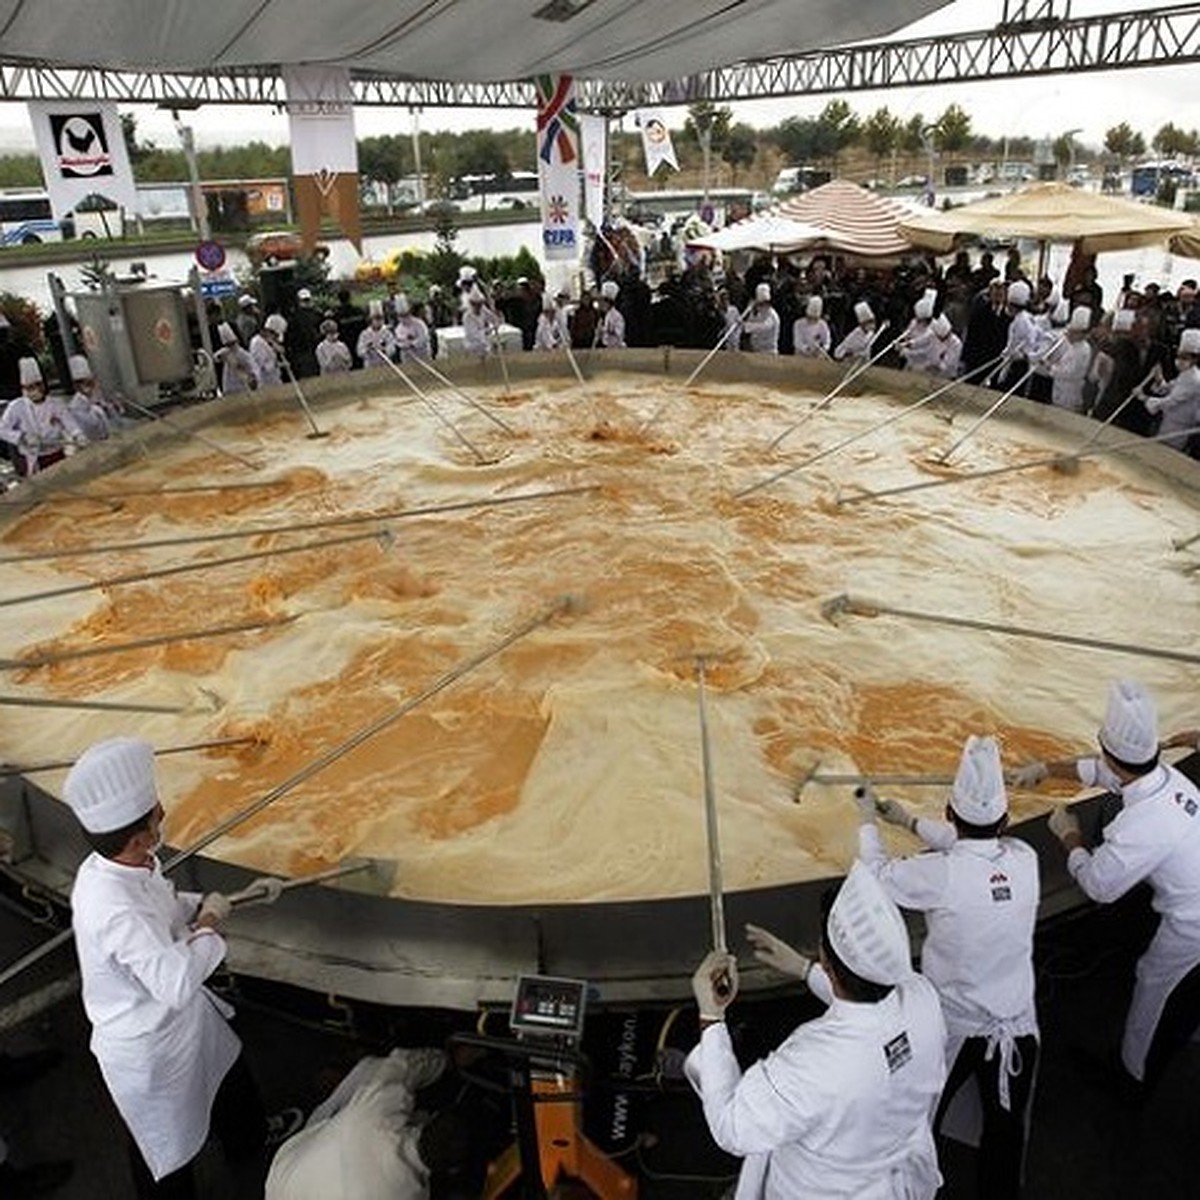 Самая длинная пицца в мире фото